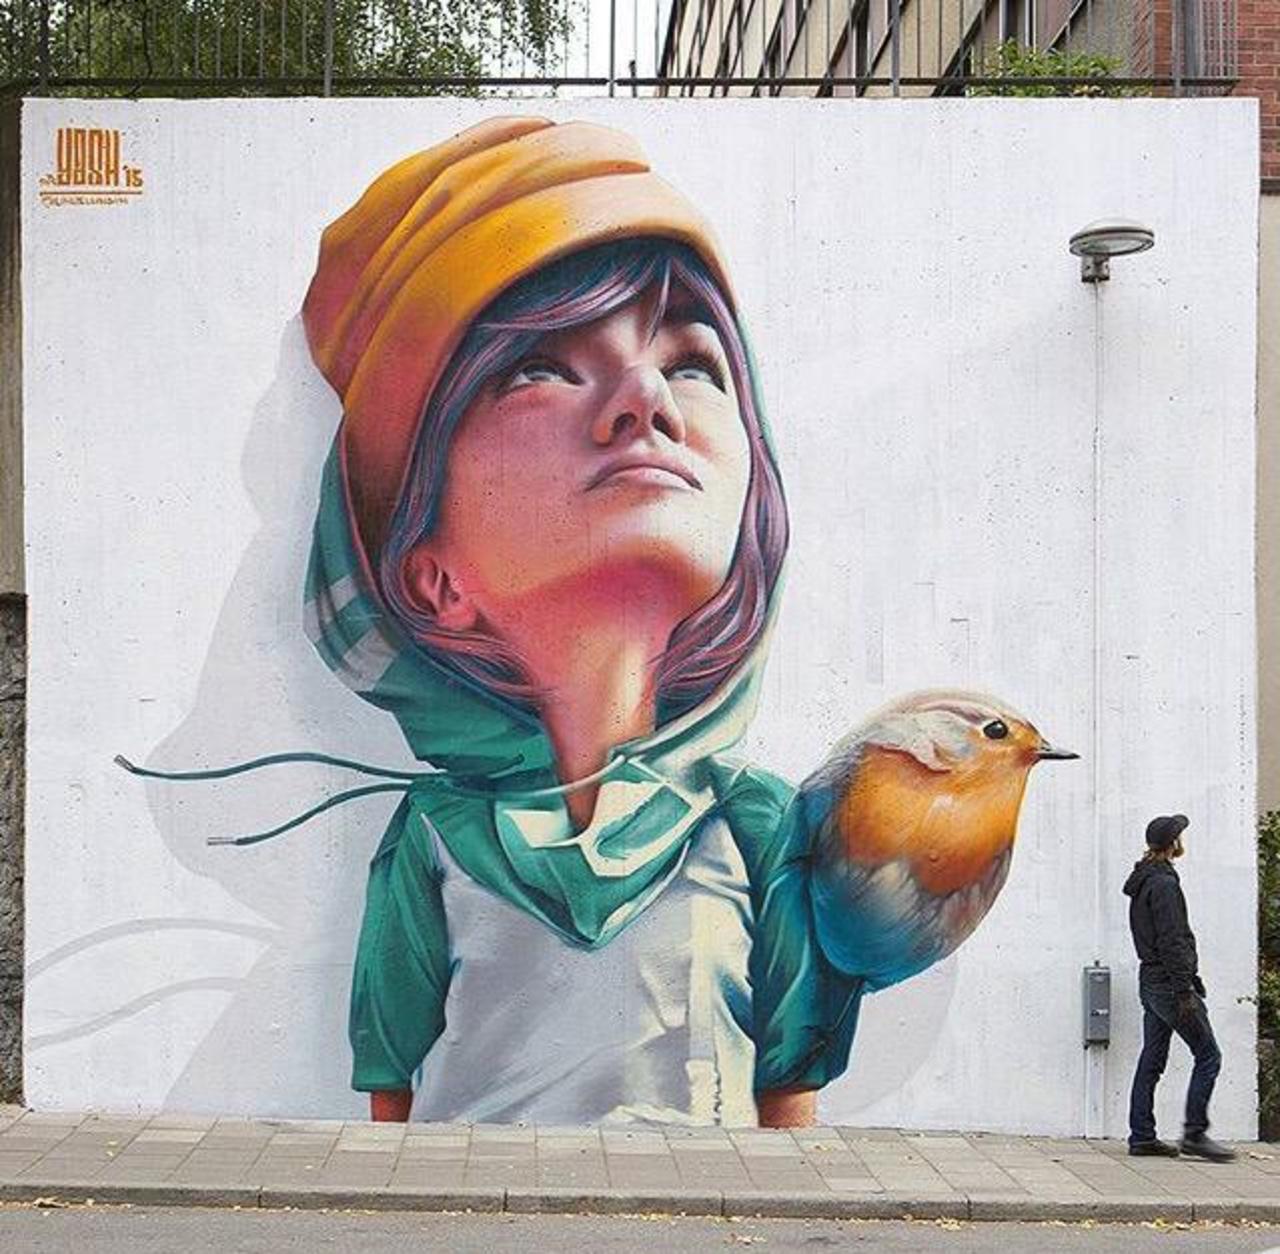 New Street Art by Yash 

#art #graffiti #mural #streetart http://t.co/I2tTAcoTtI